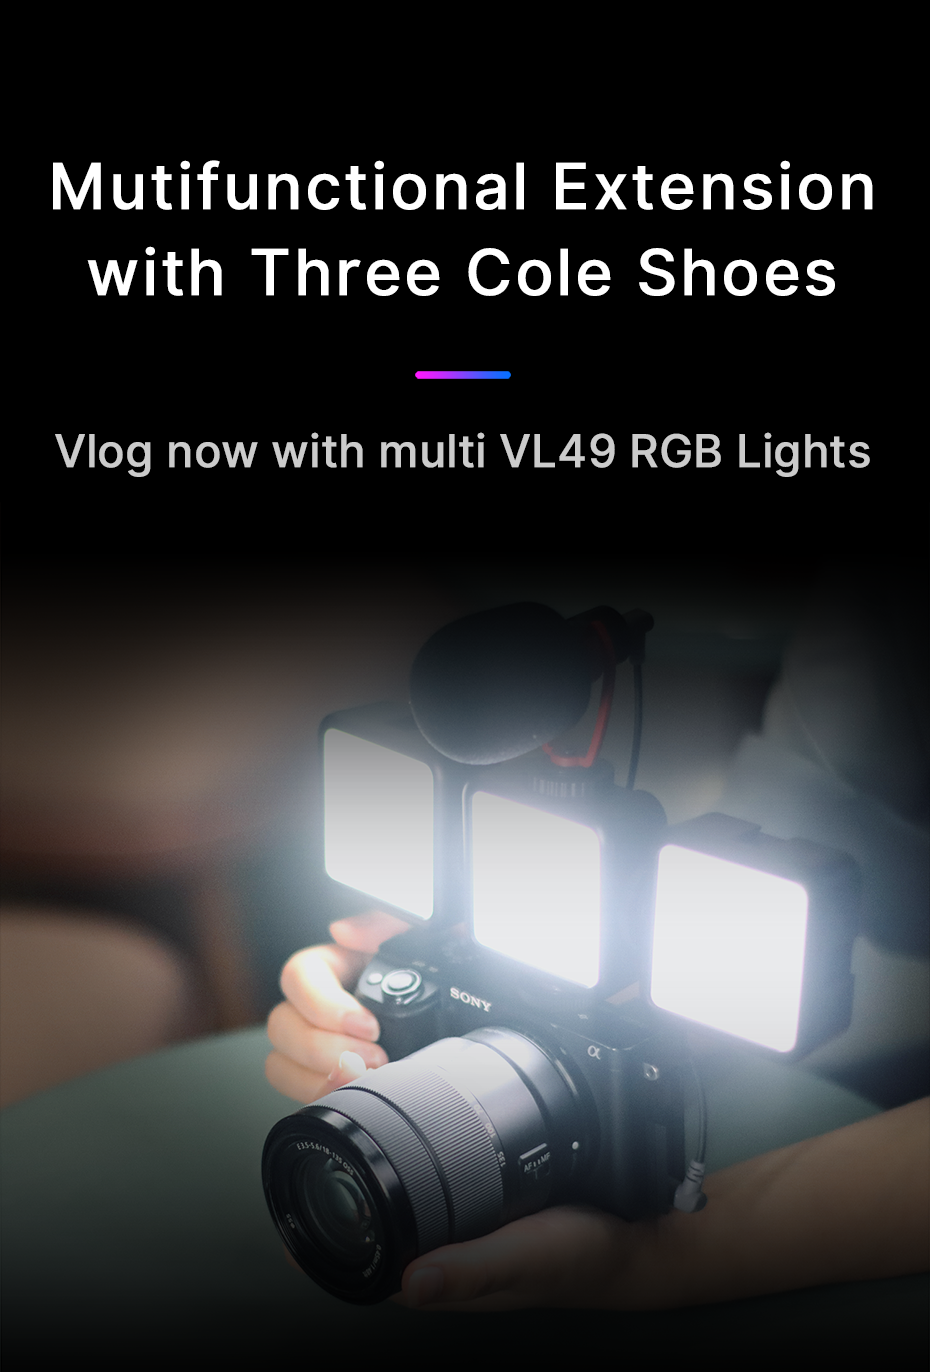 Ulanzi-VL49-RGB-Full-Color-LED-Video-Light-2500K-9000K-with-Magnetic-Mini-Fill-Lamp-Extend-3-Cold-Sh-1889418-10